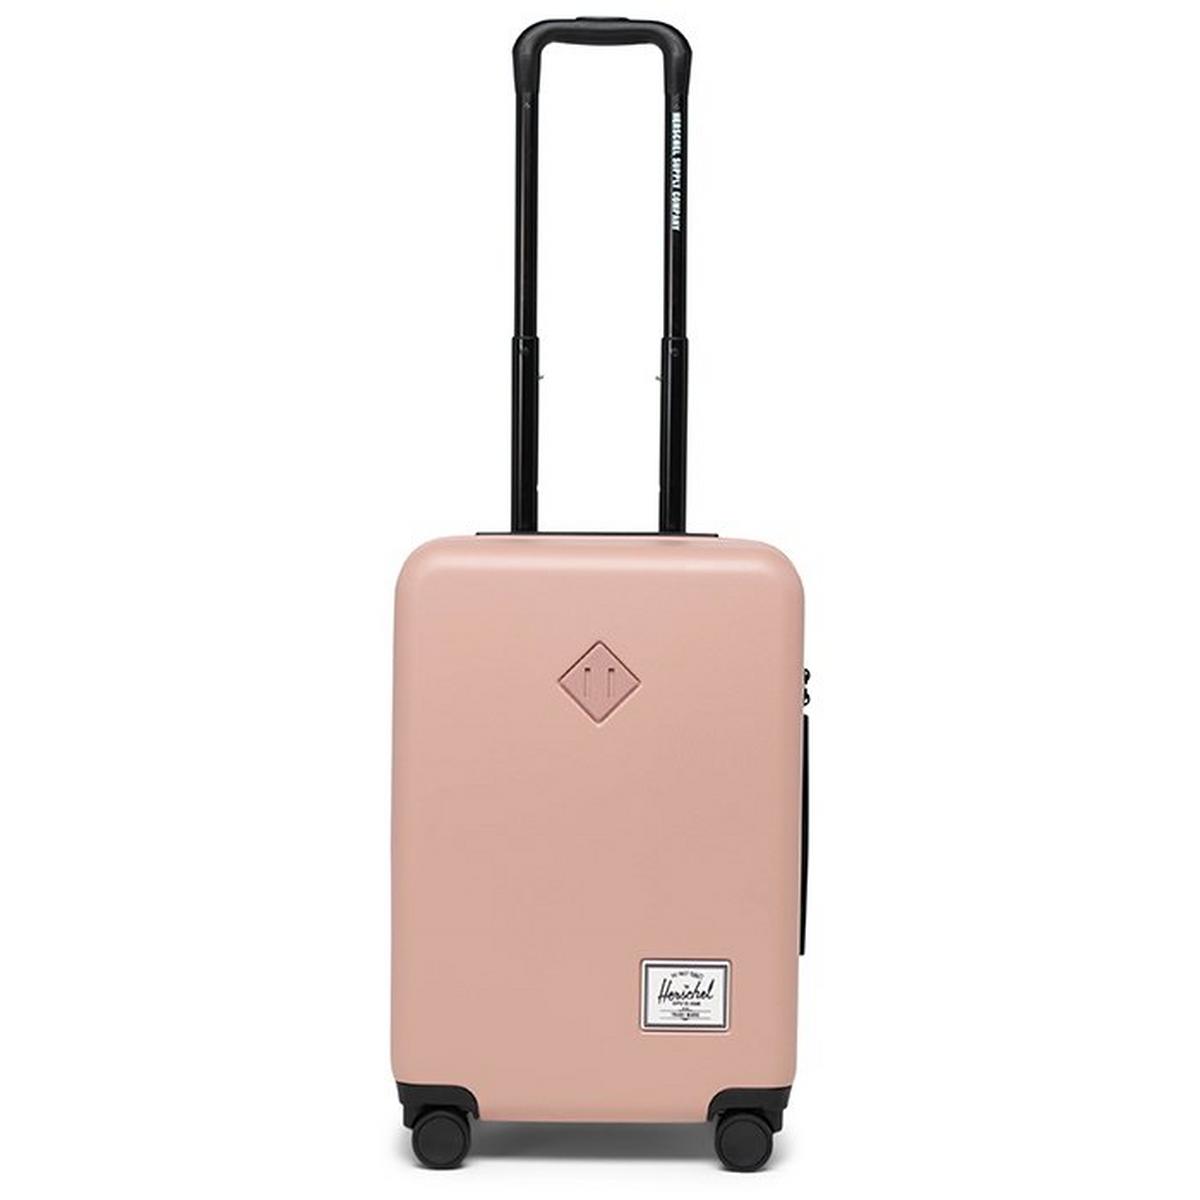 Heritage™ Hardshell Large Carry-On Luggage